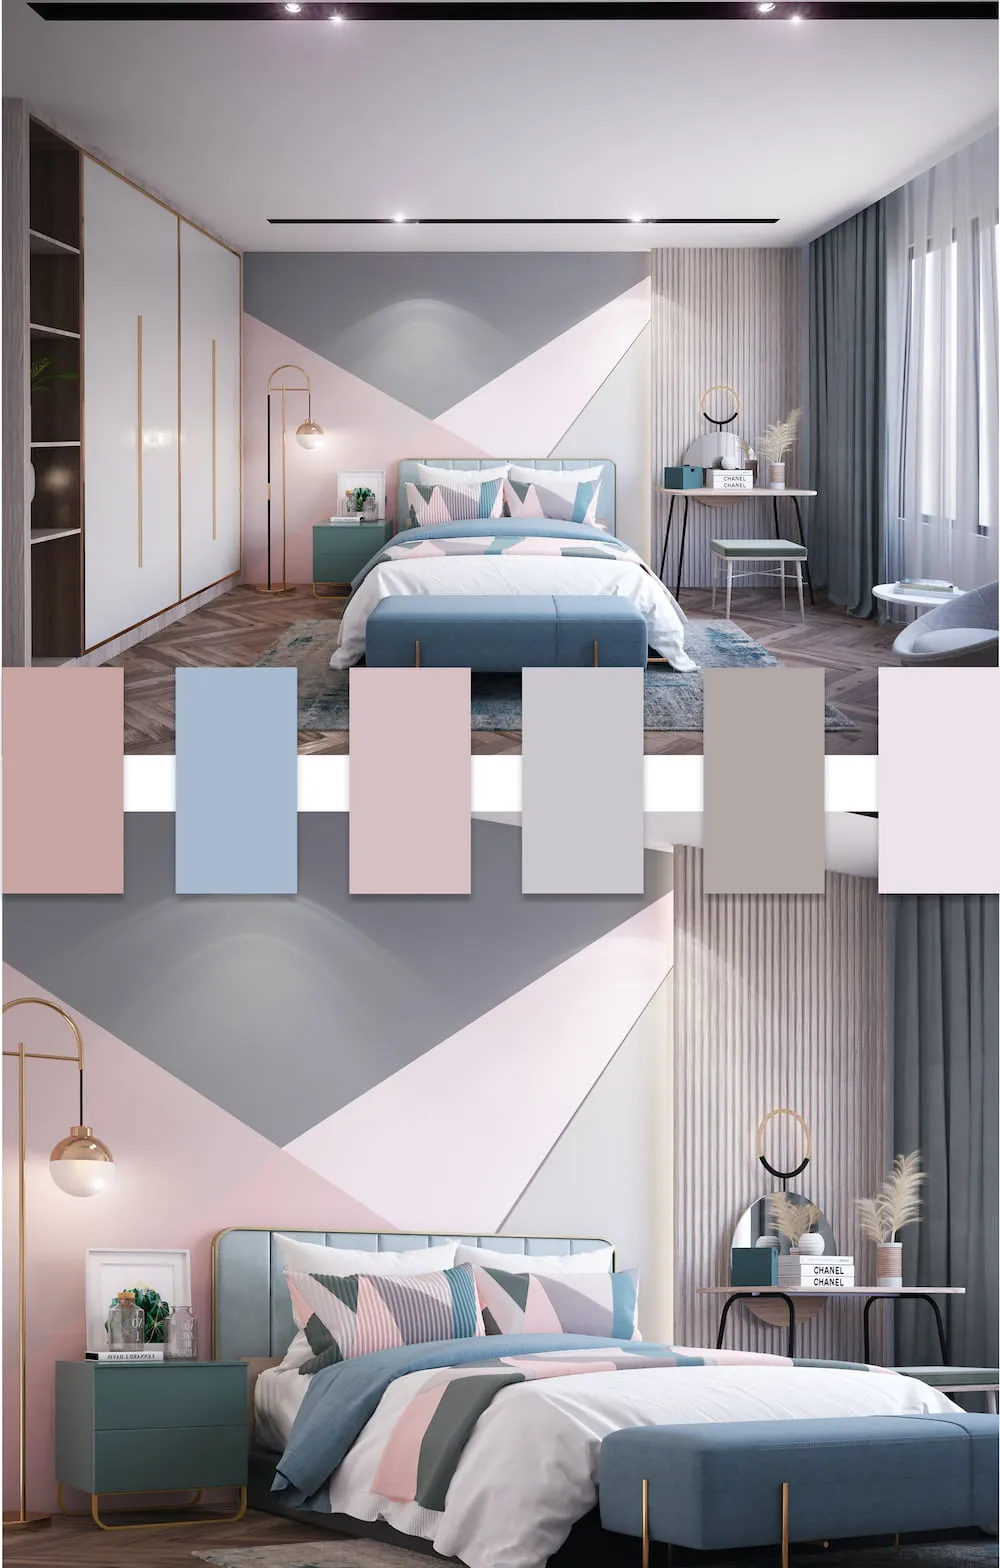 Шикарная кровать подходящая по цвету и стилистике розовой спальне